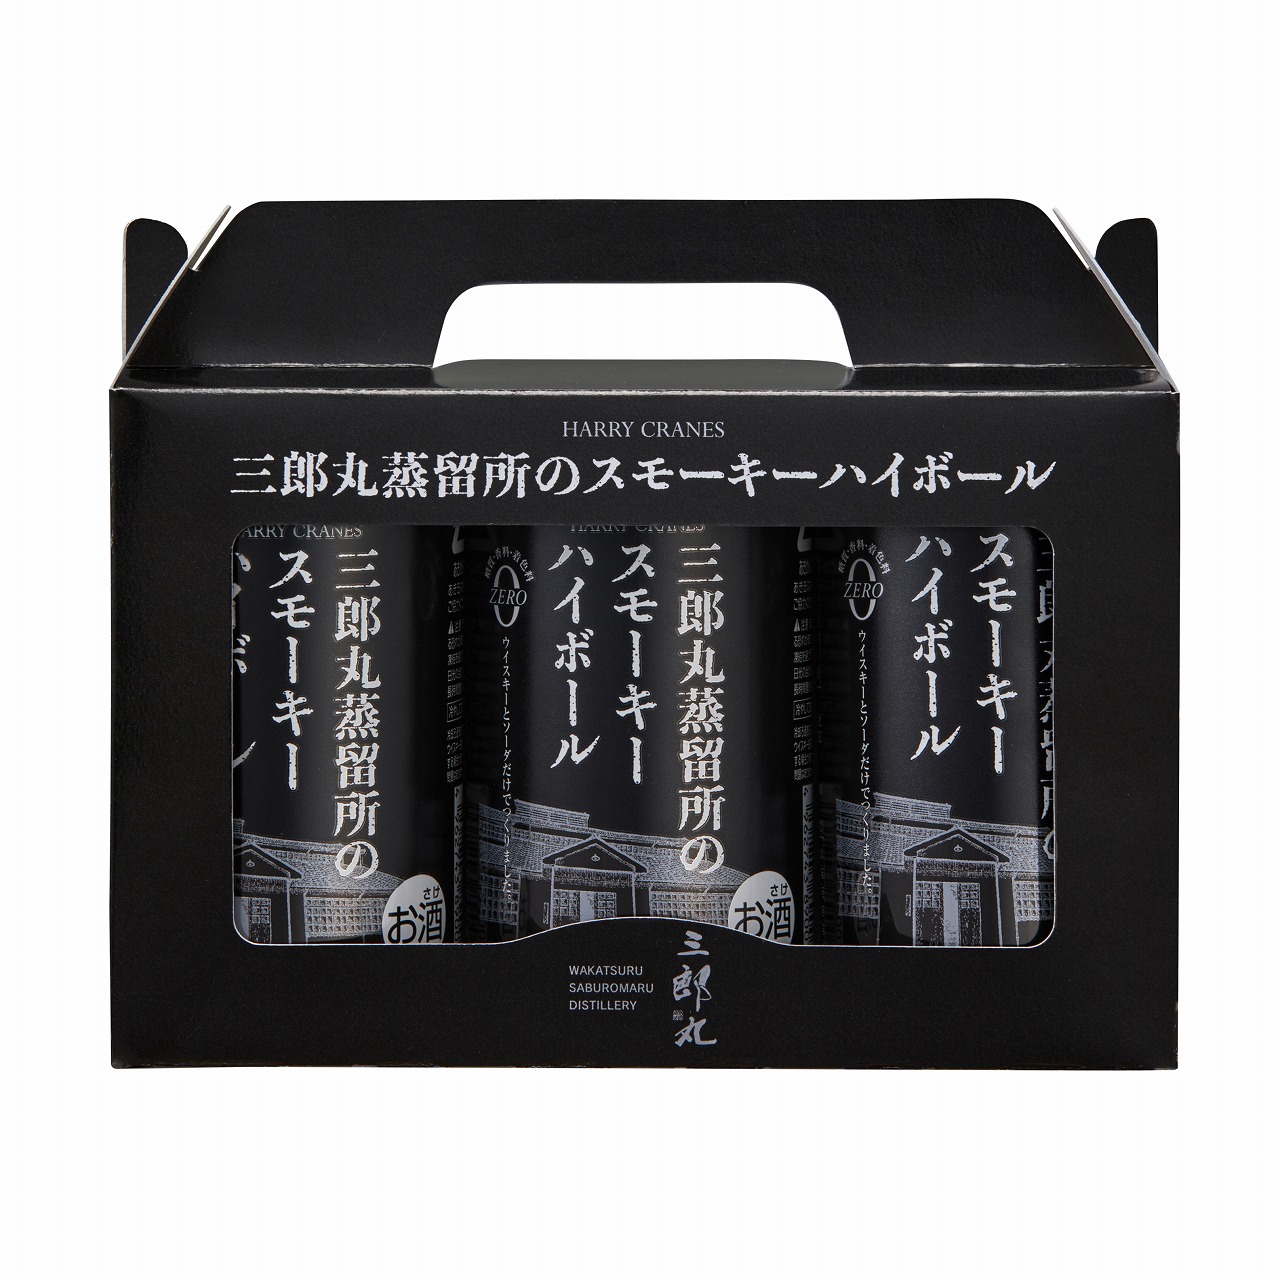 三郎丸蒸留所のスモーキーハイボール ALC9％ 3缶セット